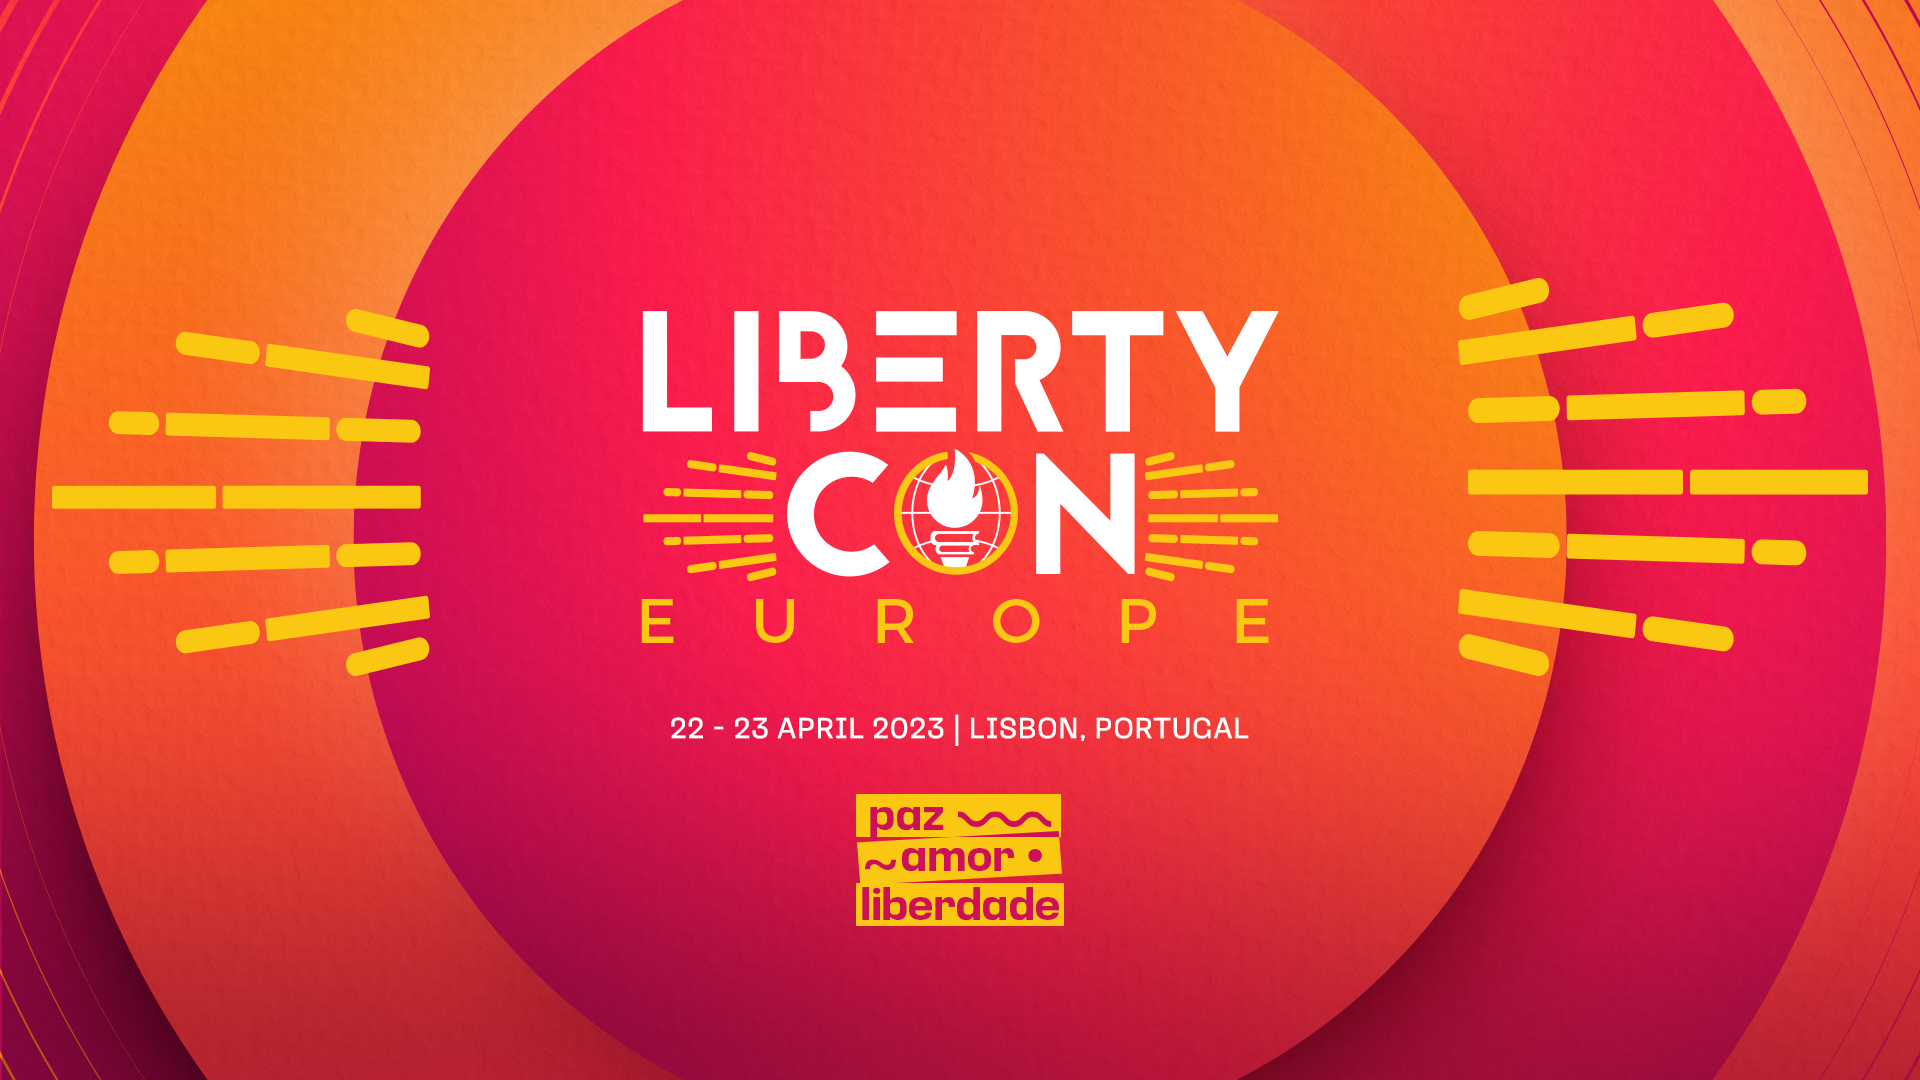 Visite-nos na LibertyCon Europe 2023 em Lisboa, Portugal!